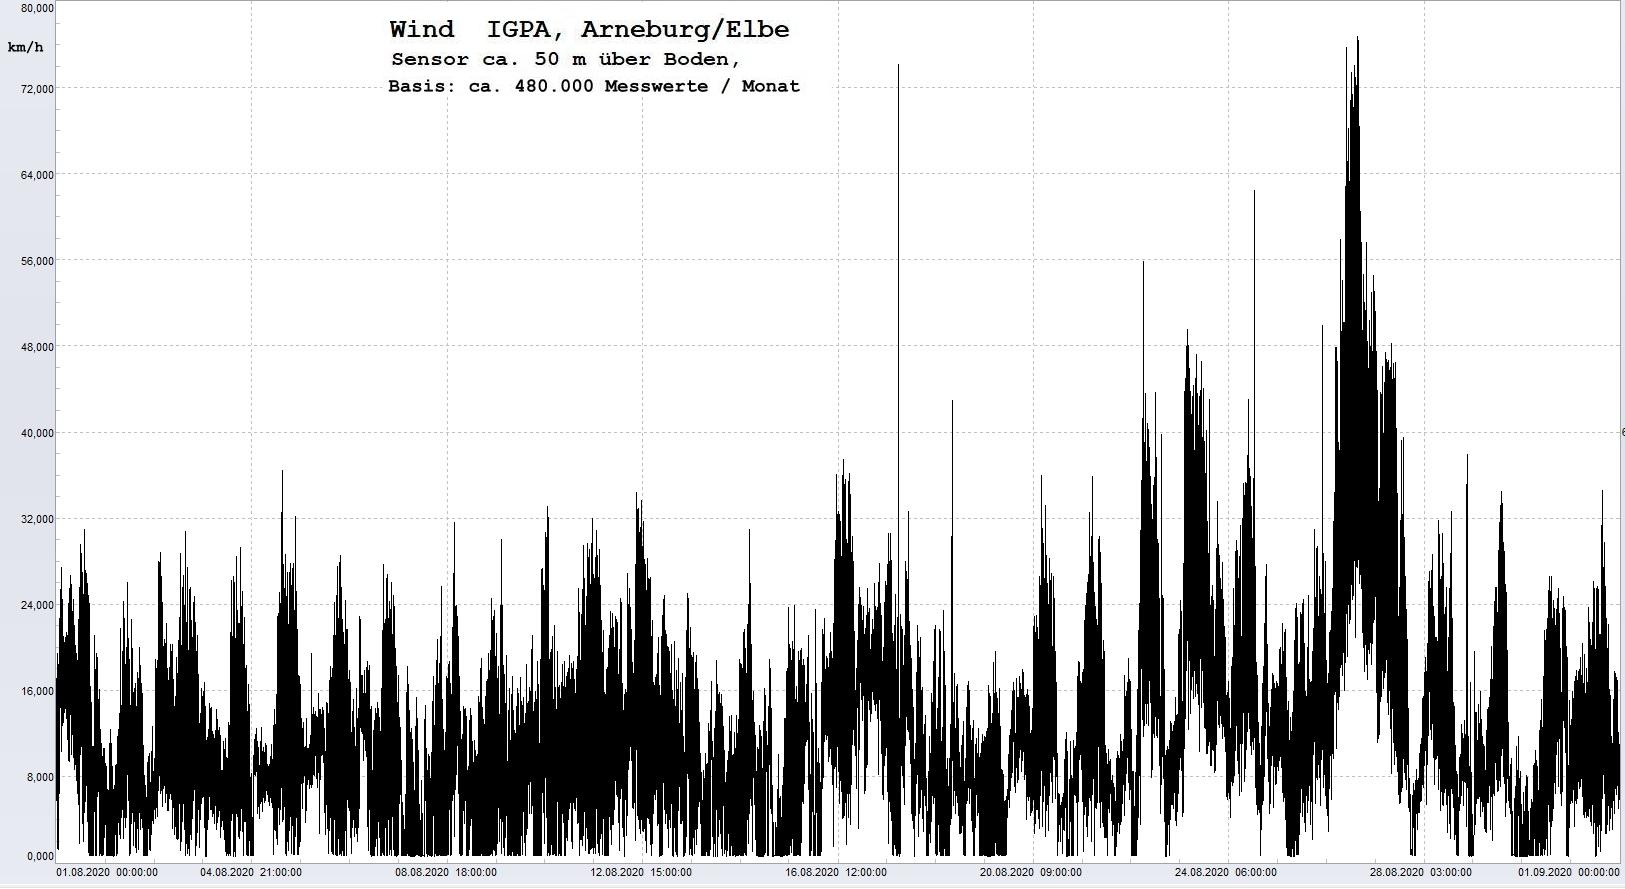 Arneburg Histogramm Winddaten Monat August 2020, 
  Sensor auf Gebäude, ca. 50 m über Erdboden, Basis: 5s-Aufzeichnung